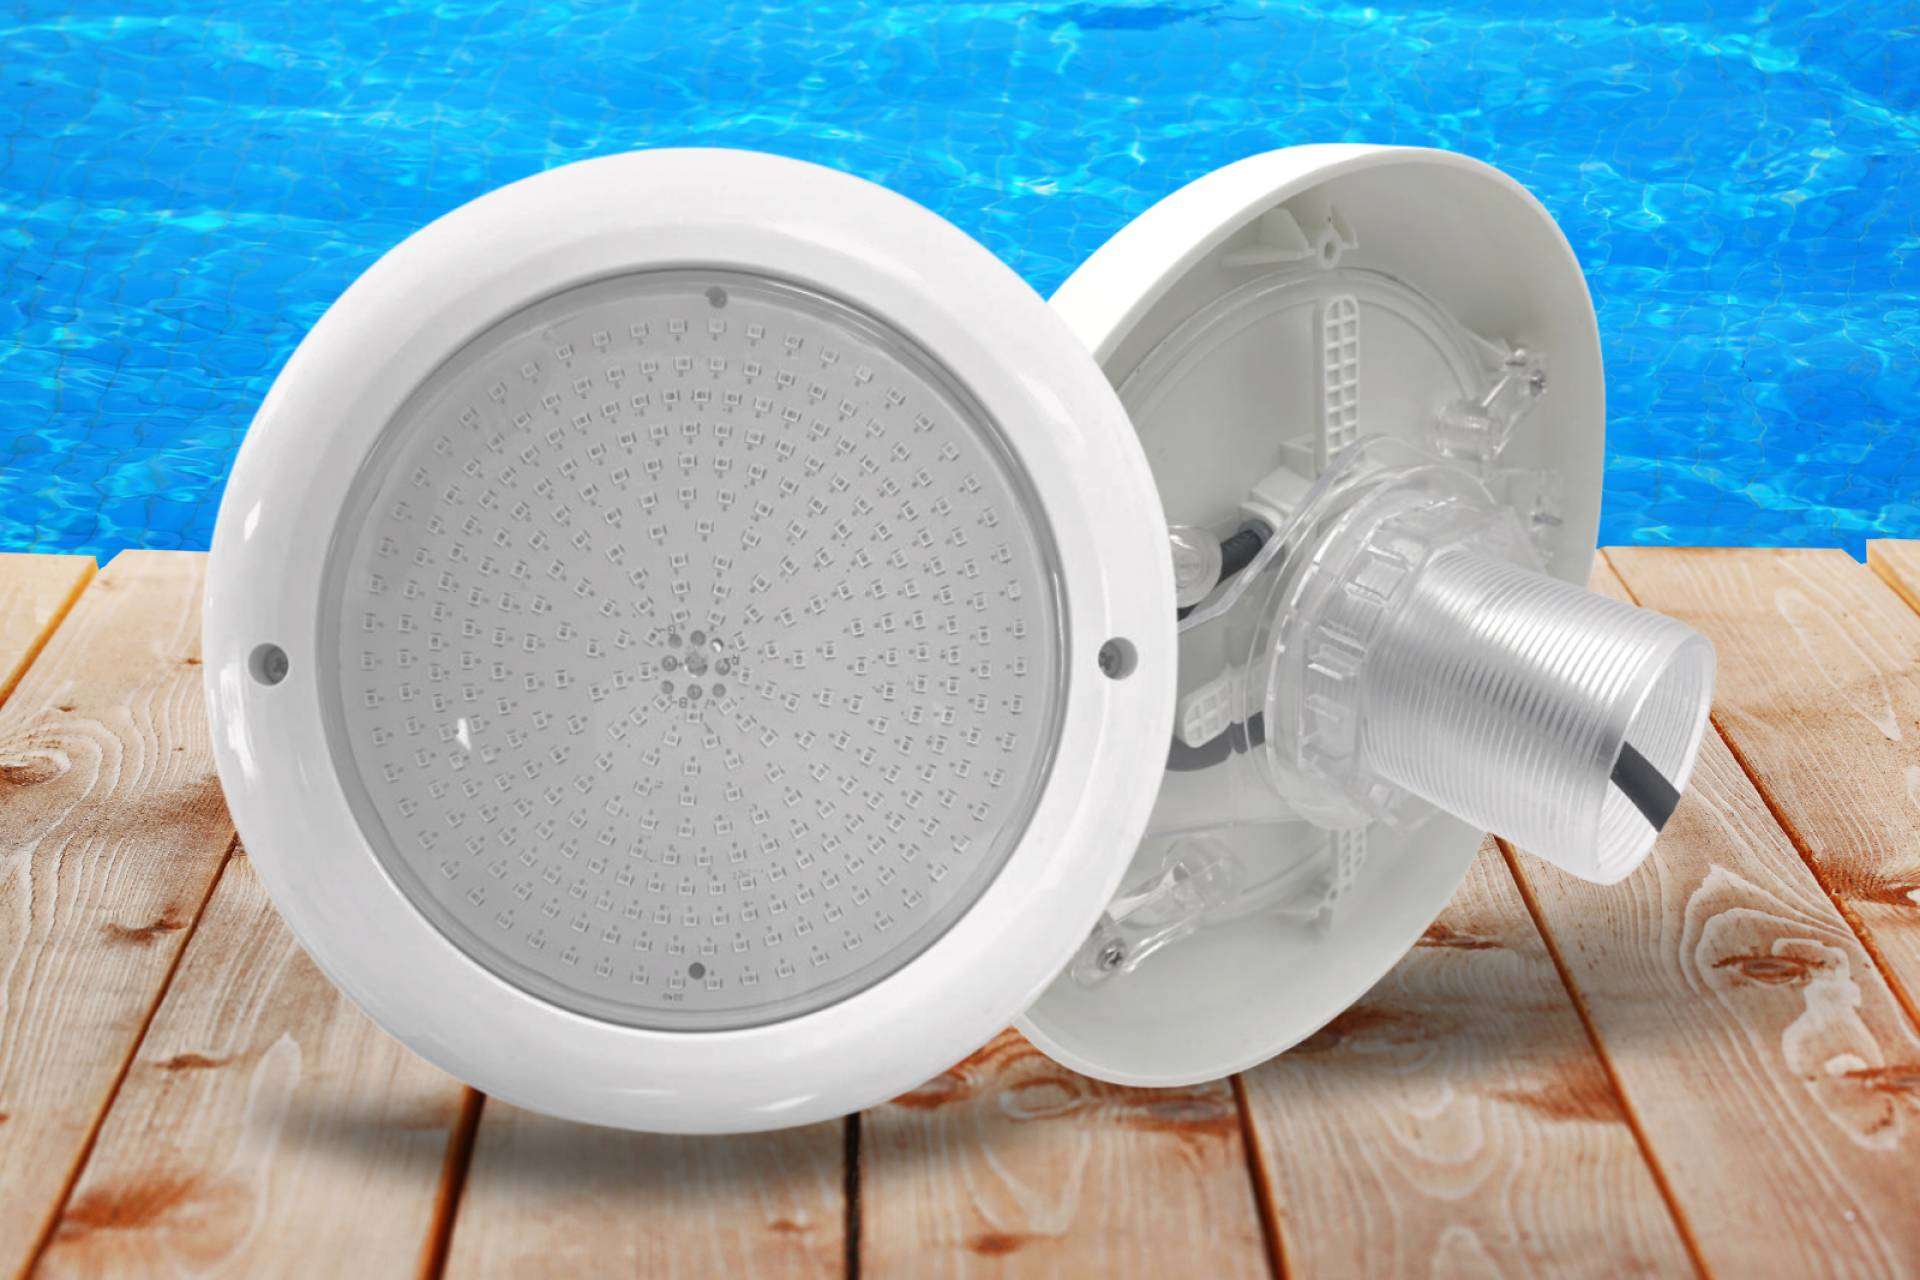 Focos Premium Warmpool, una de las alternativas más destacadas en cuanto a iluminación de piscinas